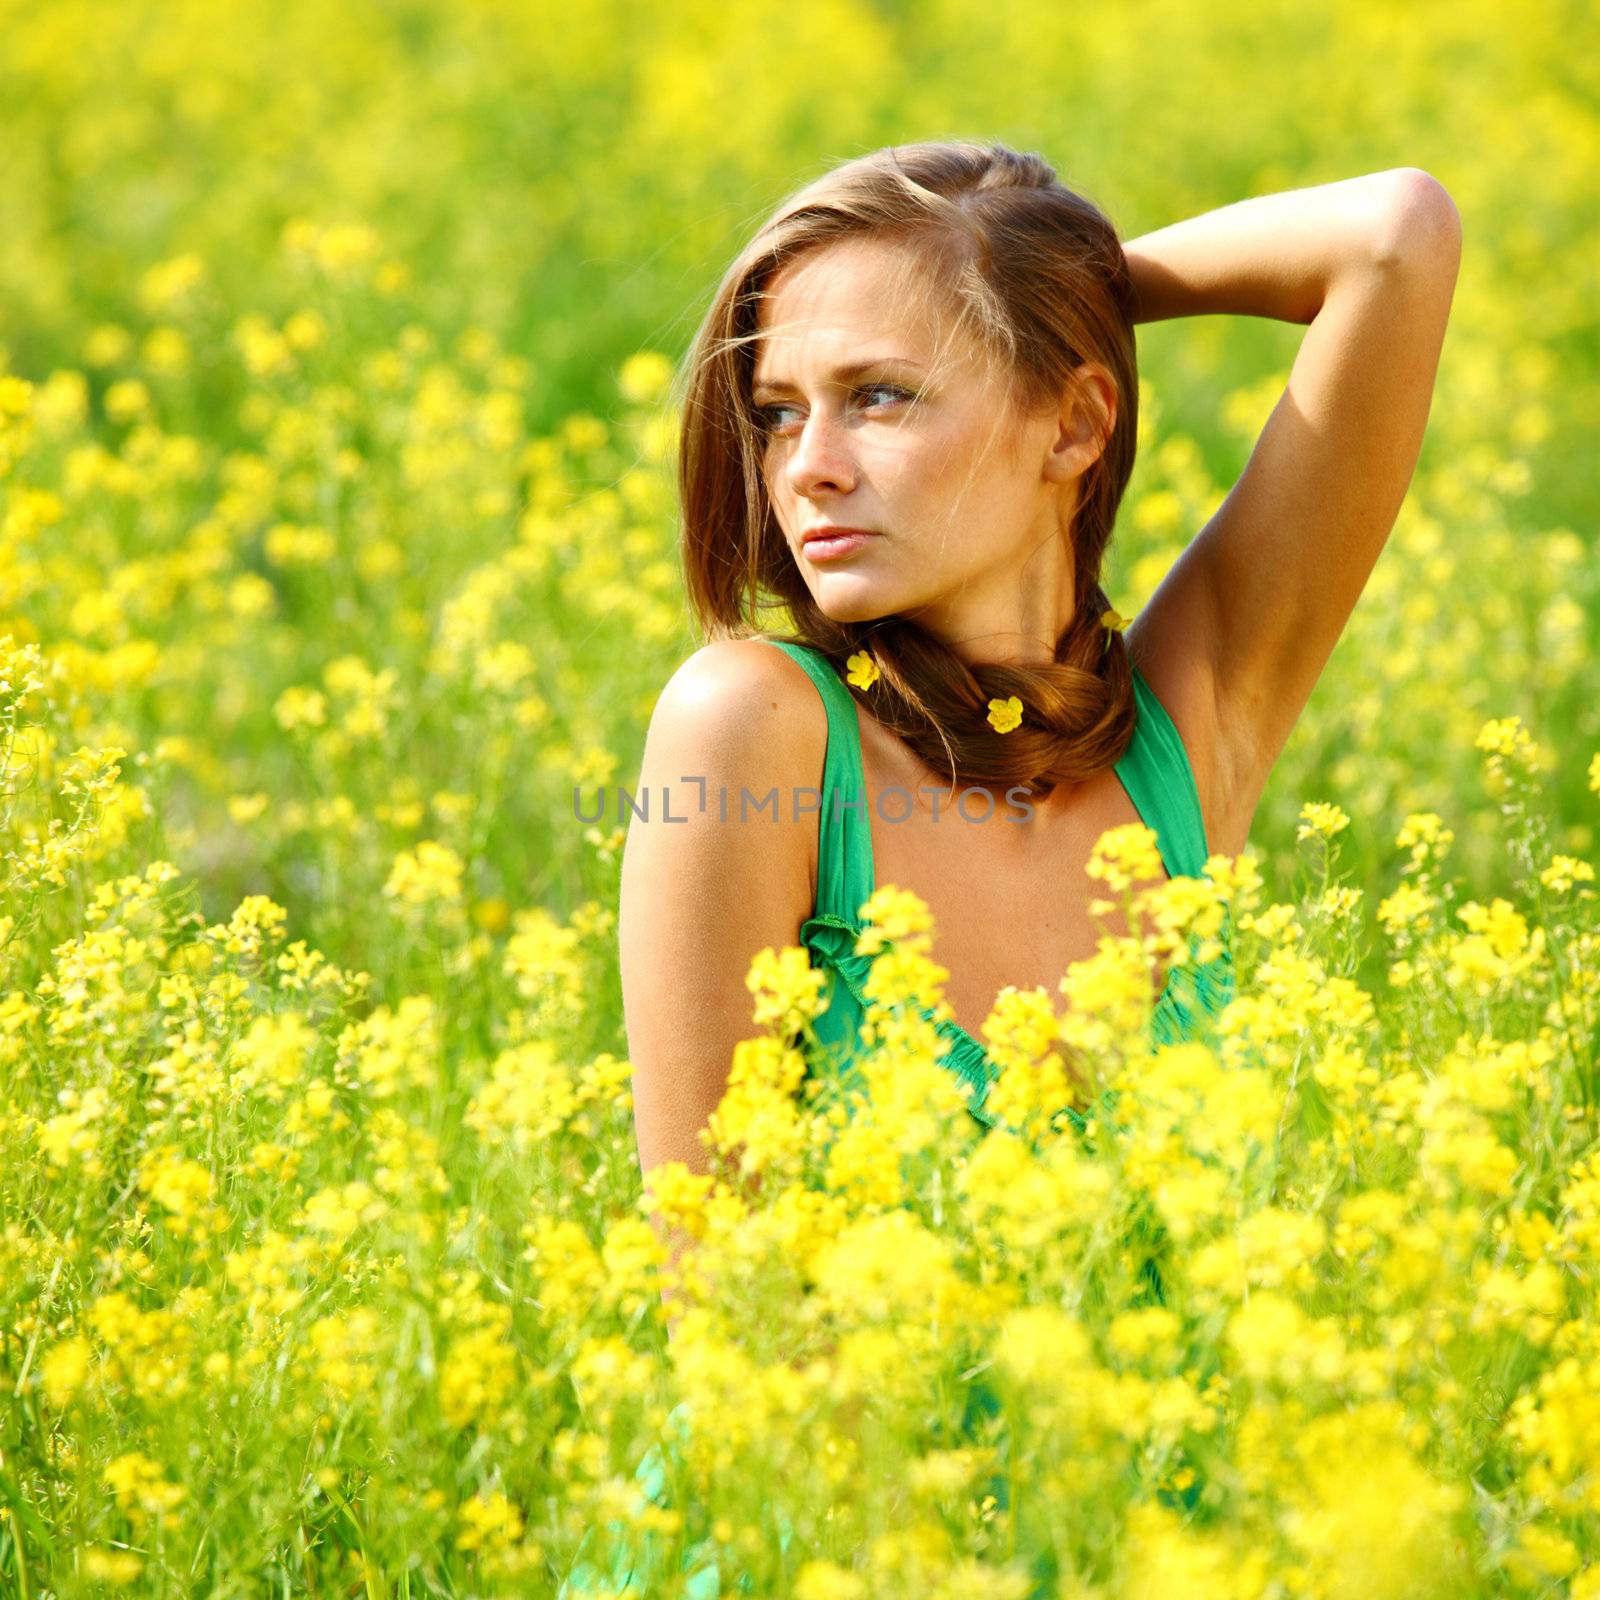 woman on oilseed field close portrait